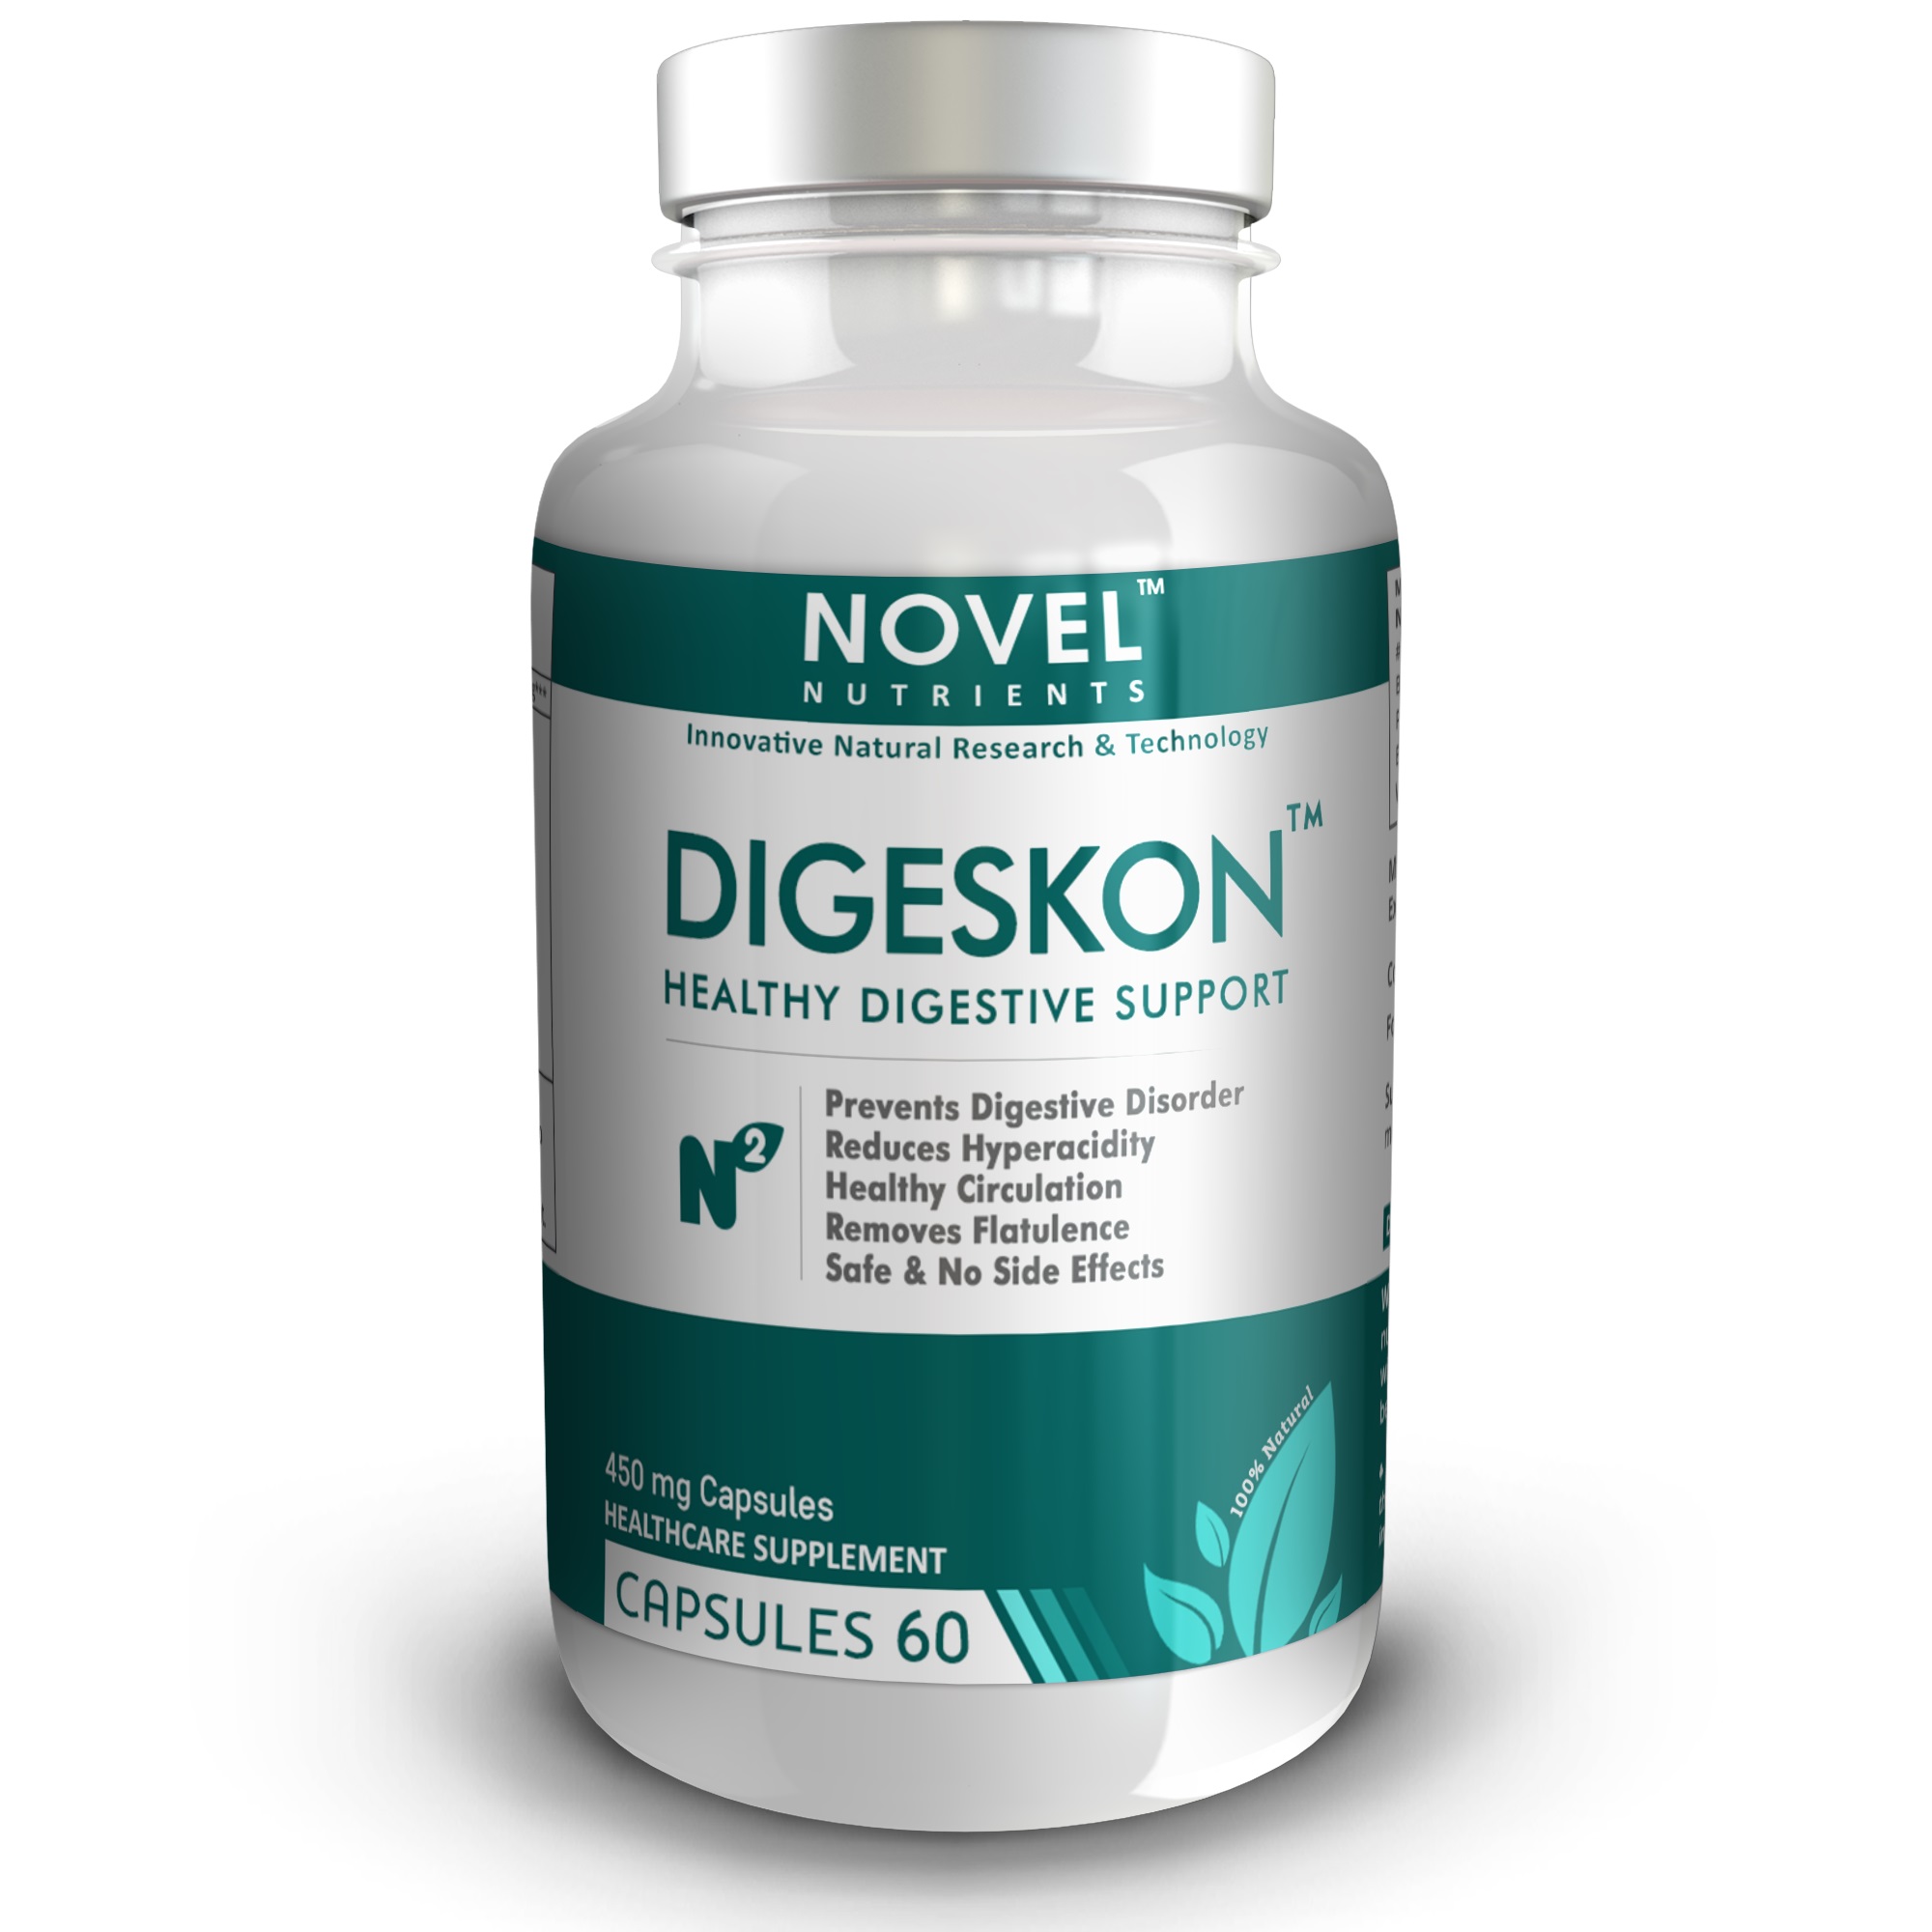 Digeskon - ТМ 450 мг капсулы здоровой пищеварительной поддержки